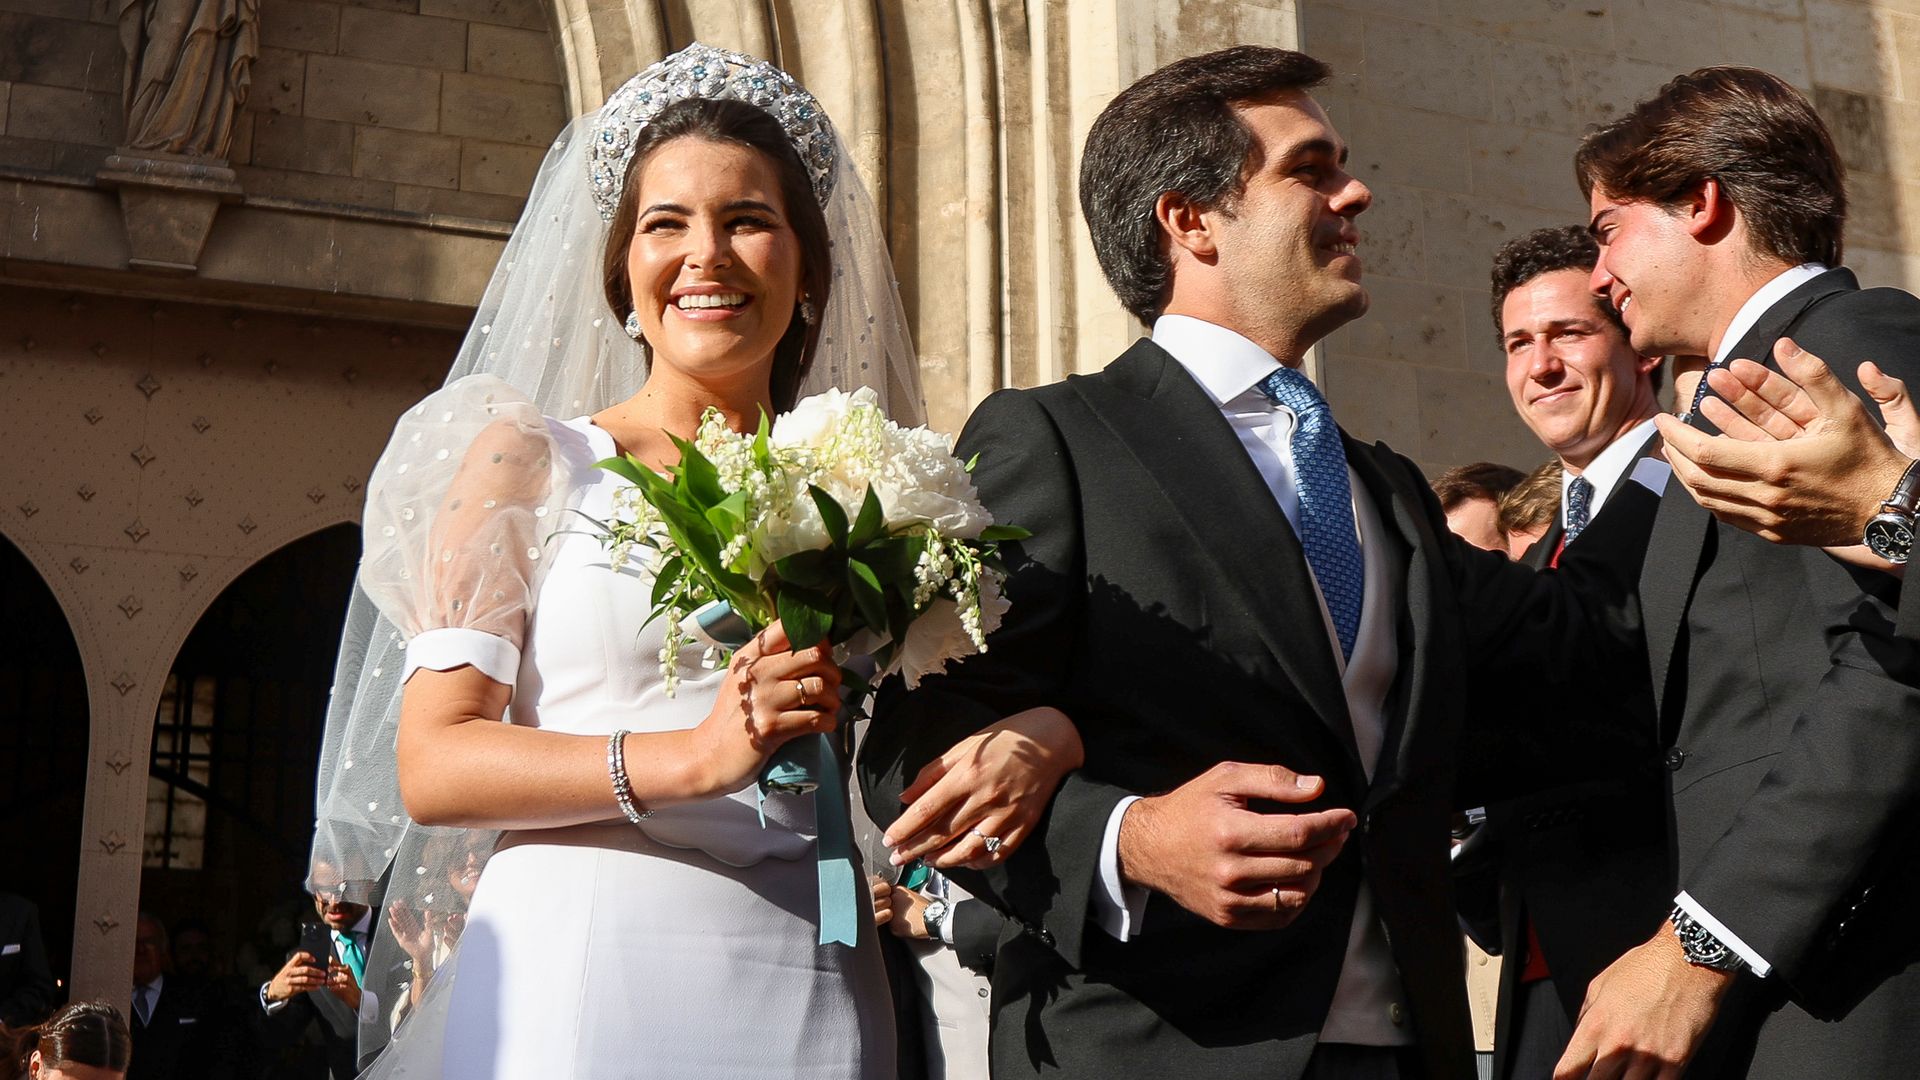 Un romántico vestido de detalles ondulantes y una tiara floral familiar: repasamos el look nupcial de Natalia Santos